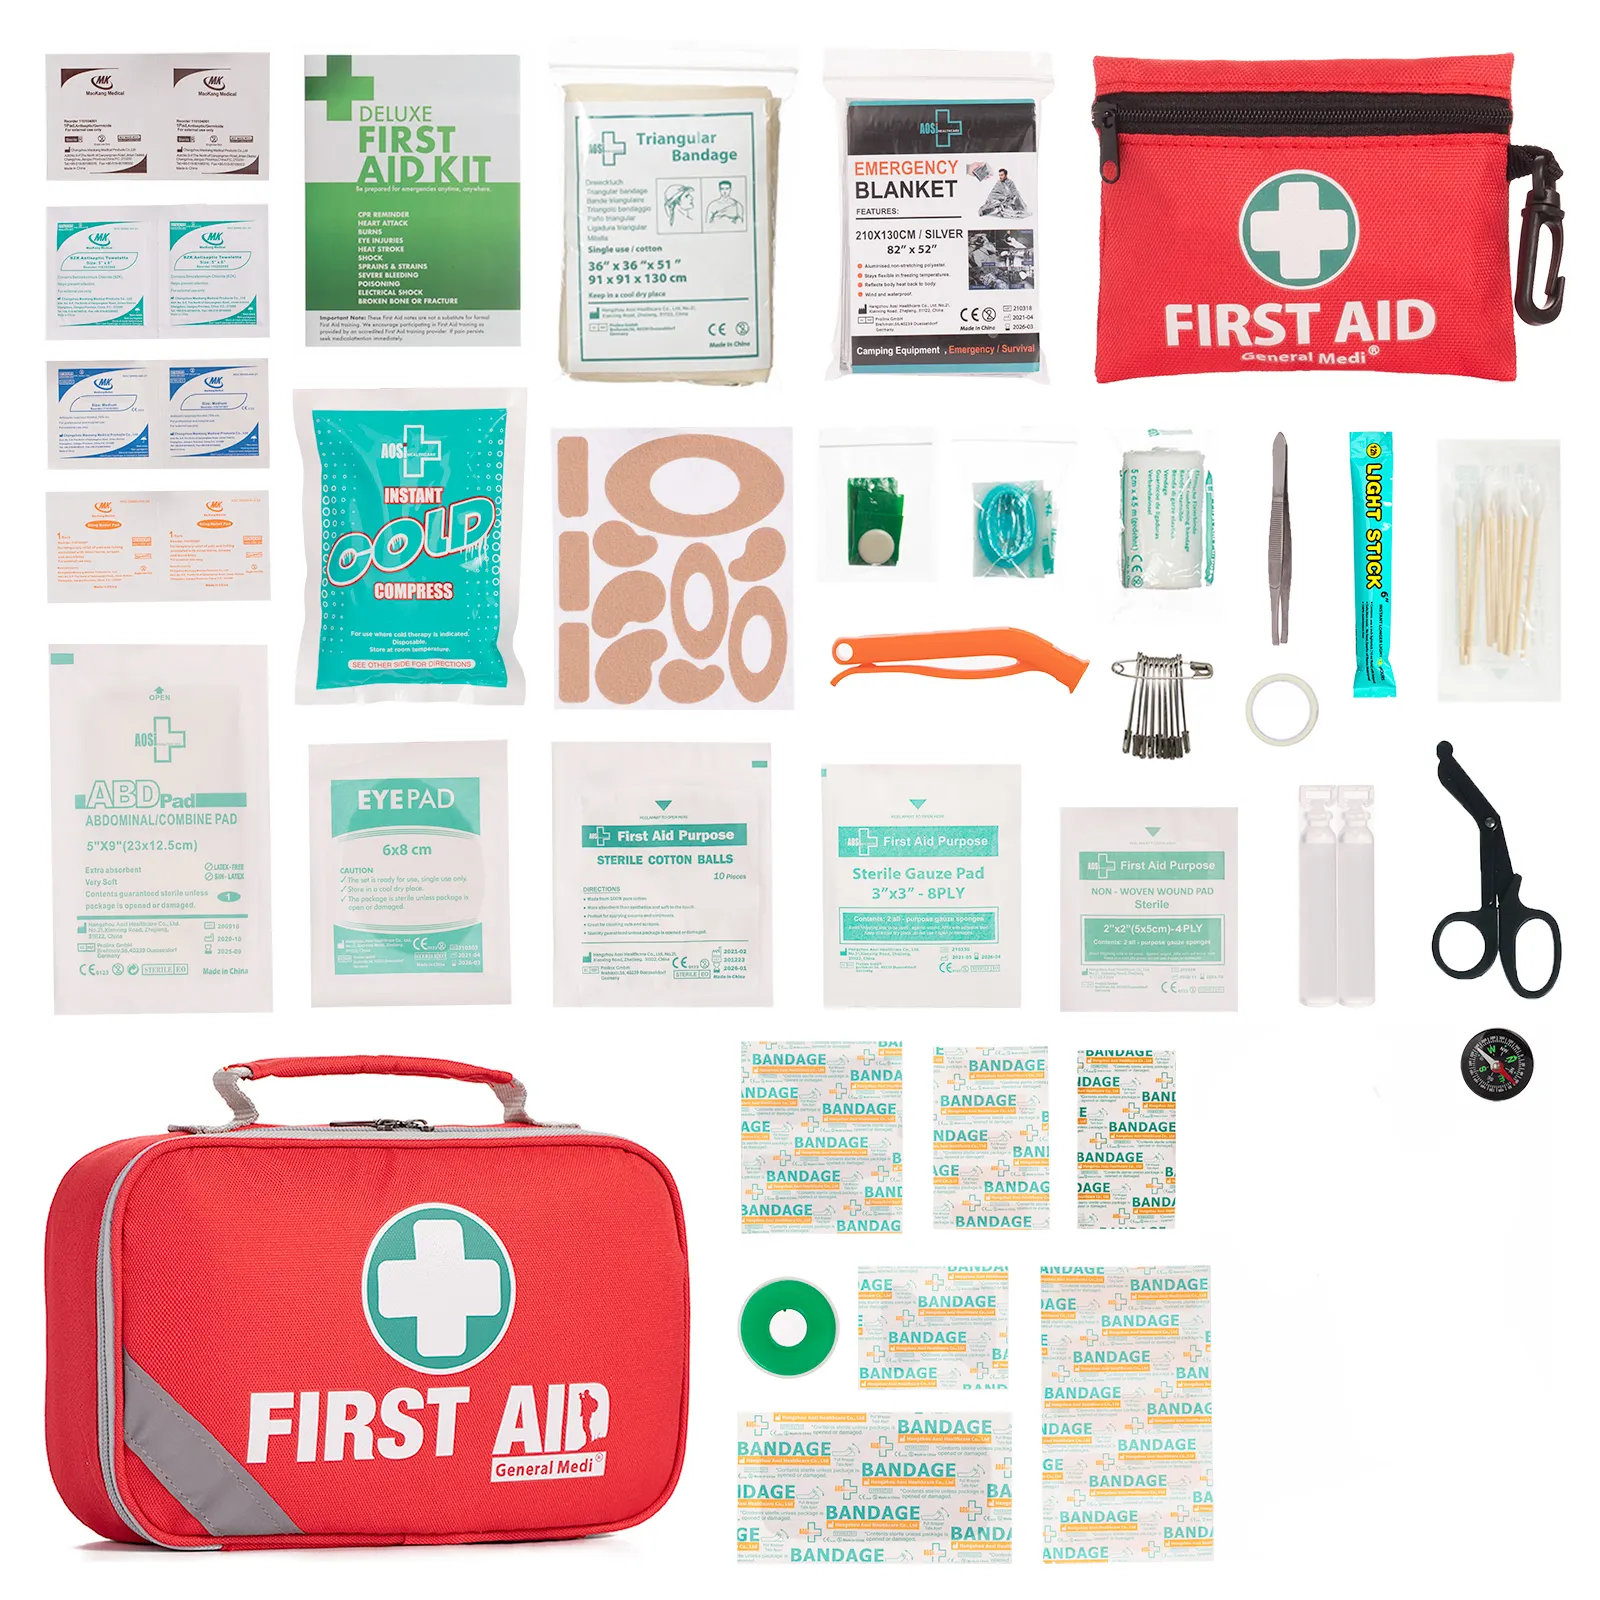 مجموعة إسعافات أولية مدرسية طراز رقم DIN 13164 وهي مجموعة إسعافات أولية صناعية ومكونة من مجموعة إسعافات أولية منزلية للطوارئ واللوازم الطبية